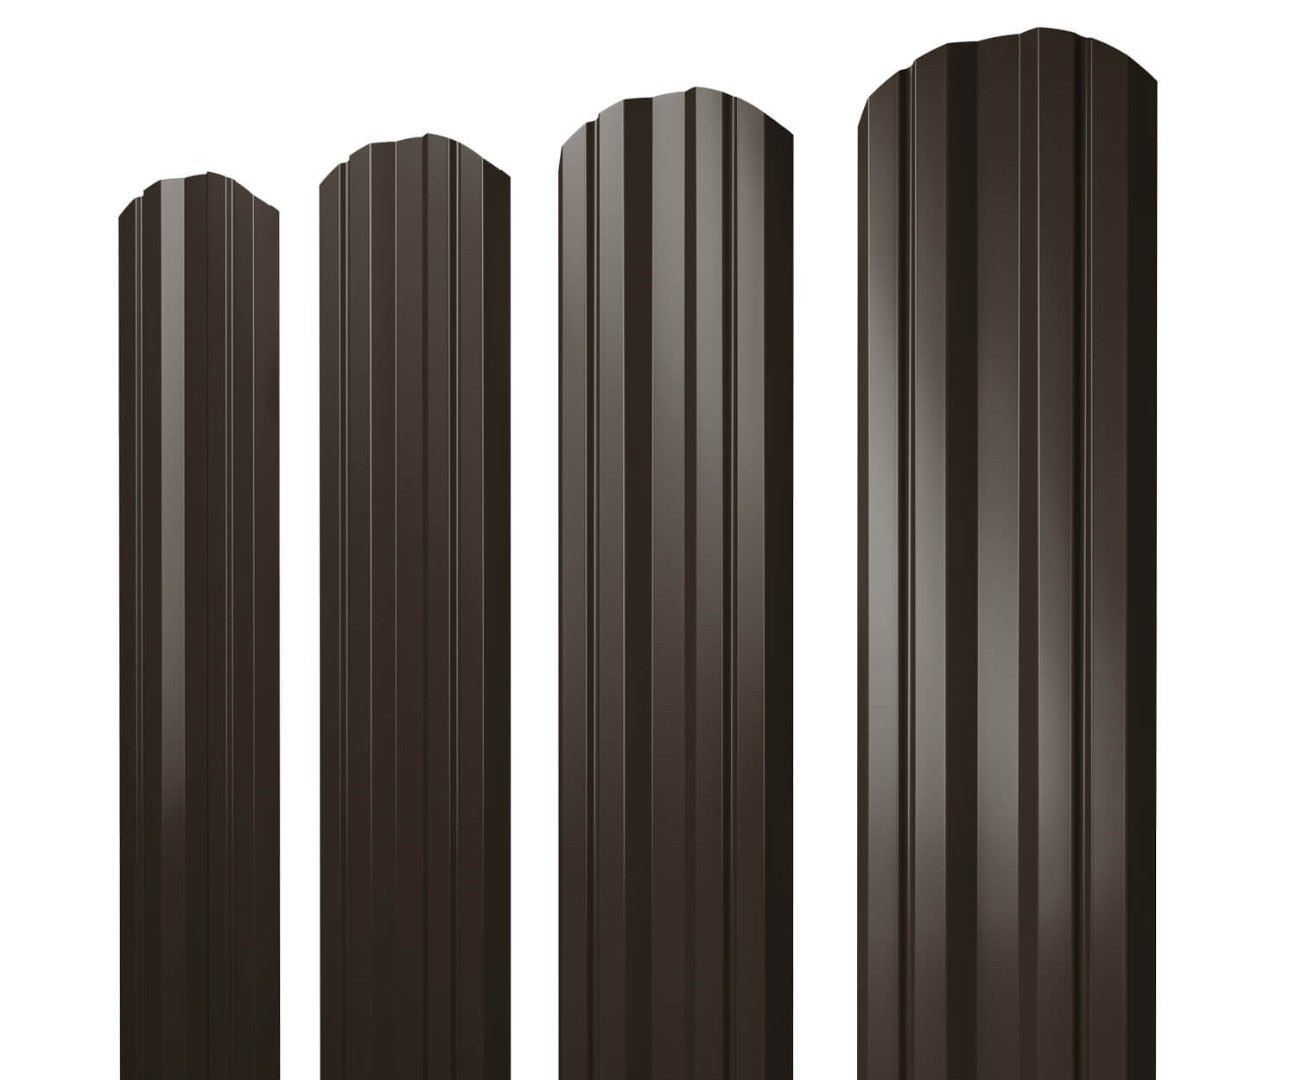 Штакетник Twin фигурный 0,5 Quarzit lite RR 32 темно-коричневый